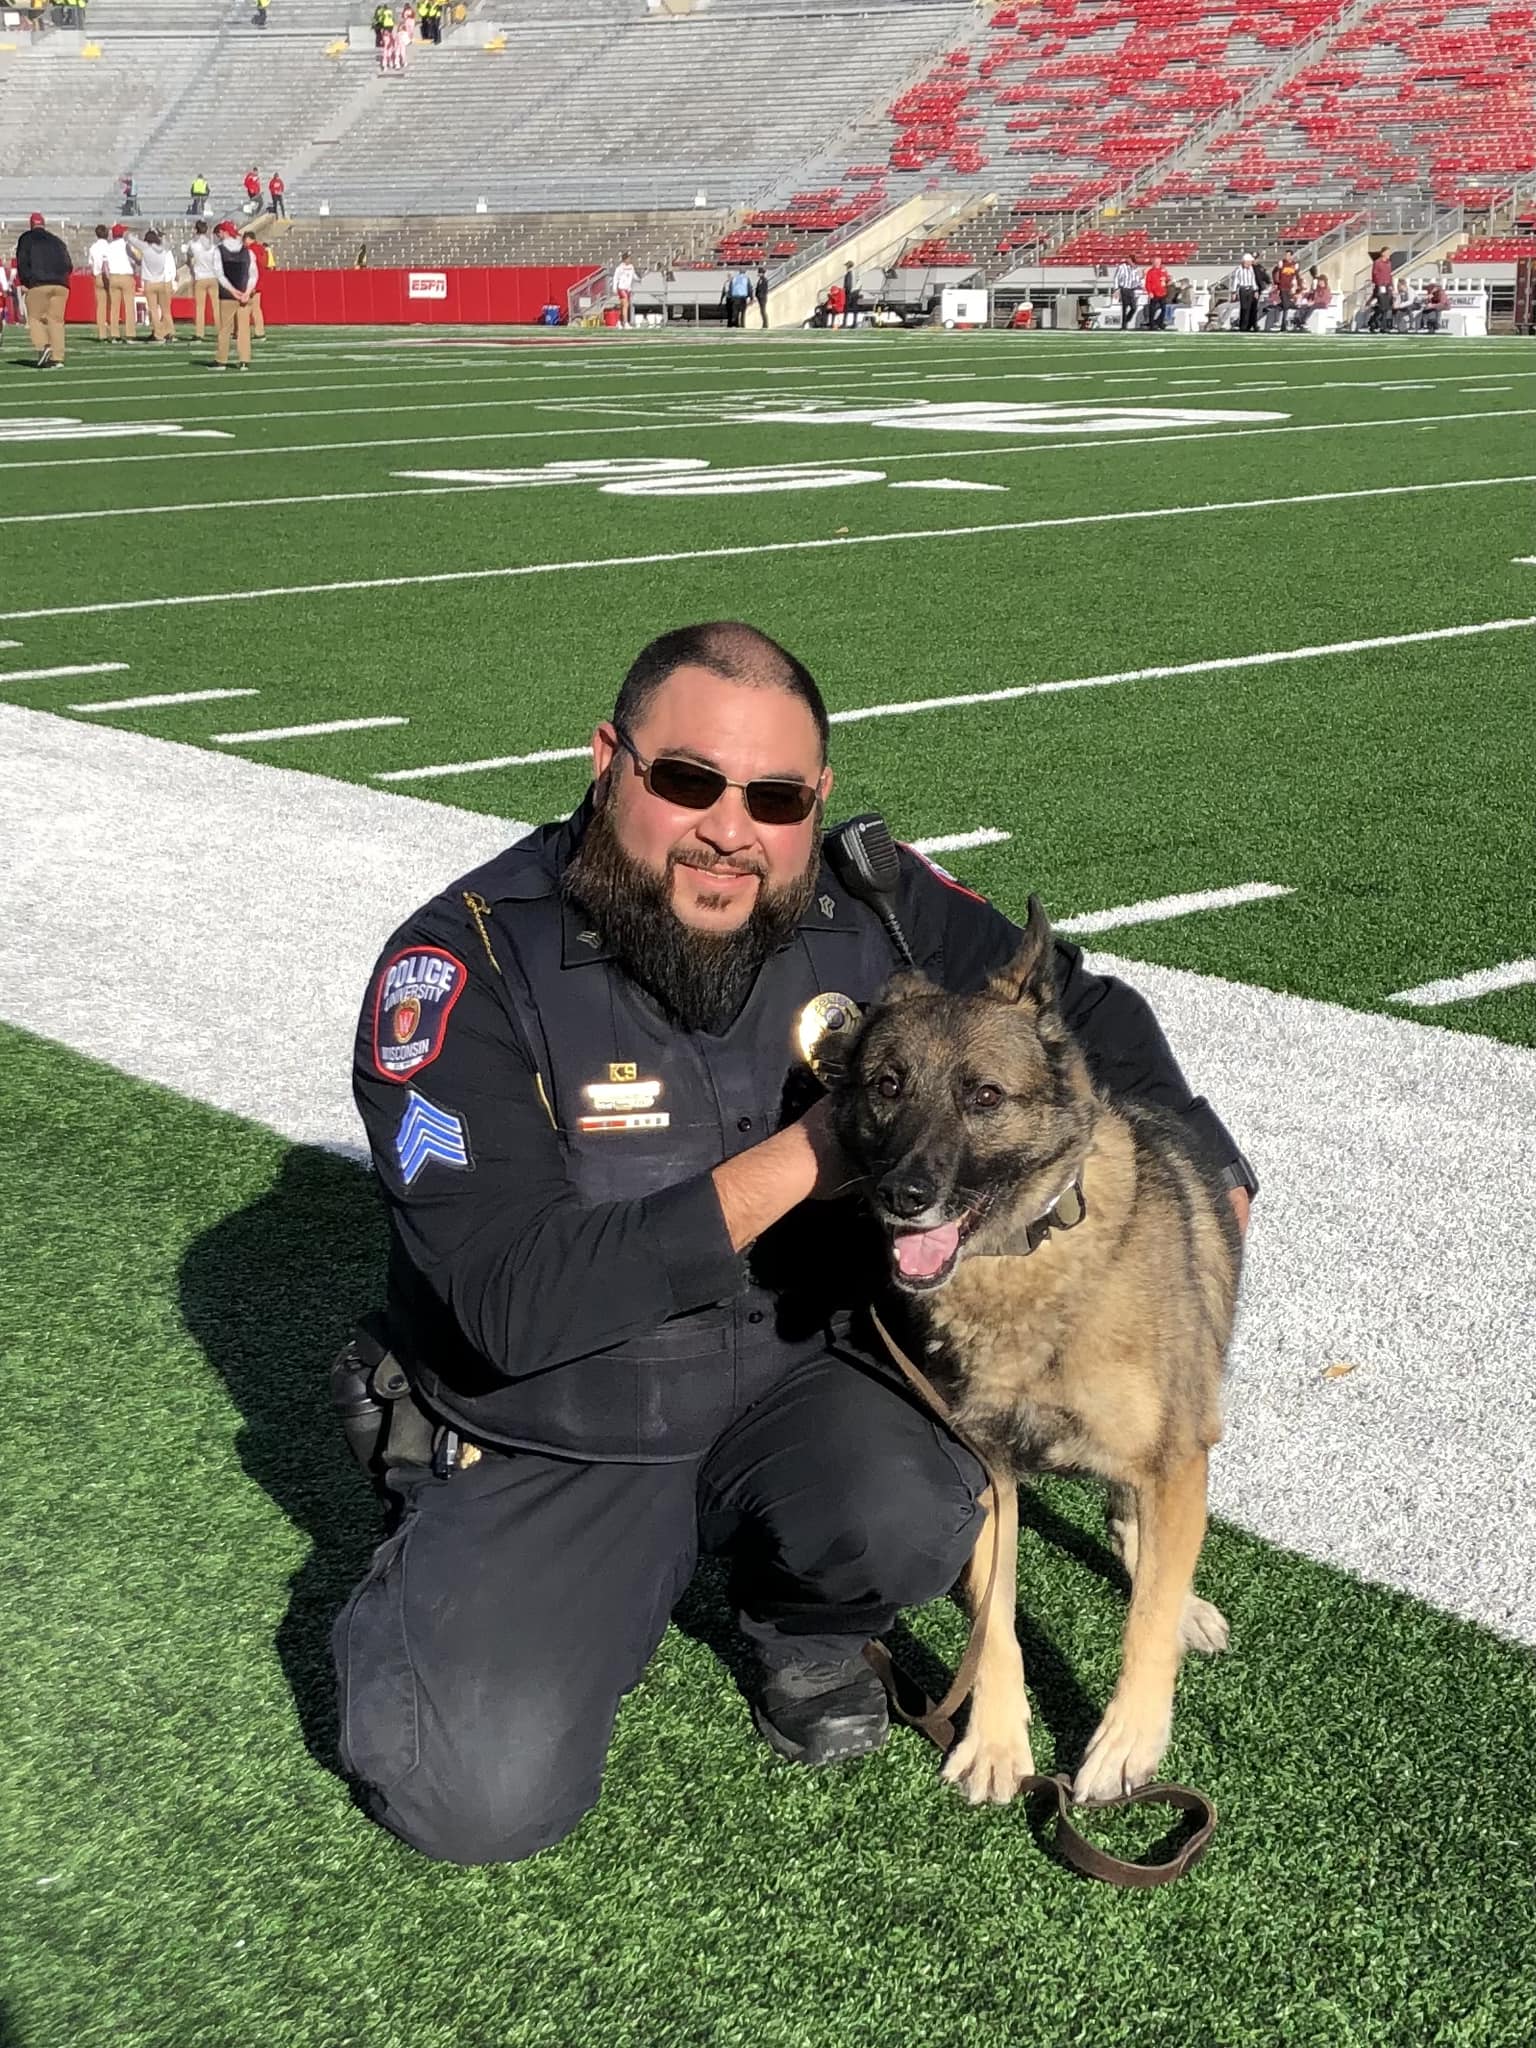 police officer and dog maya at a football field